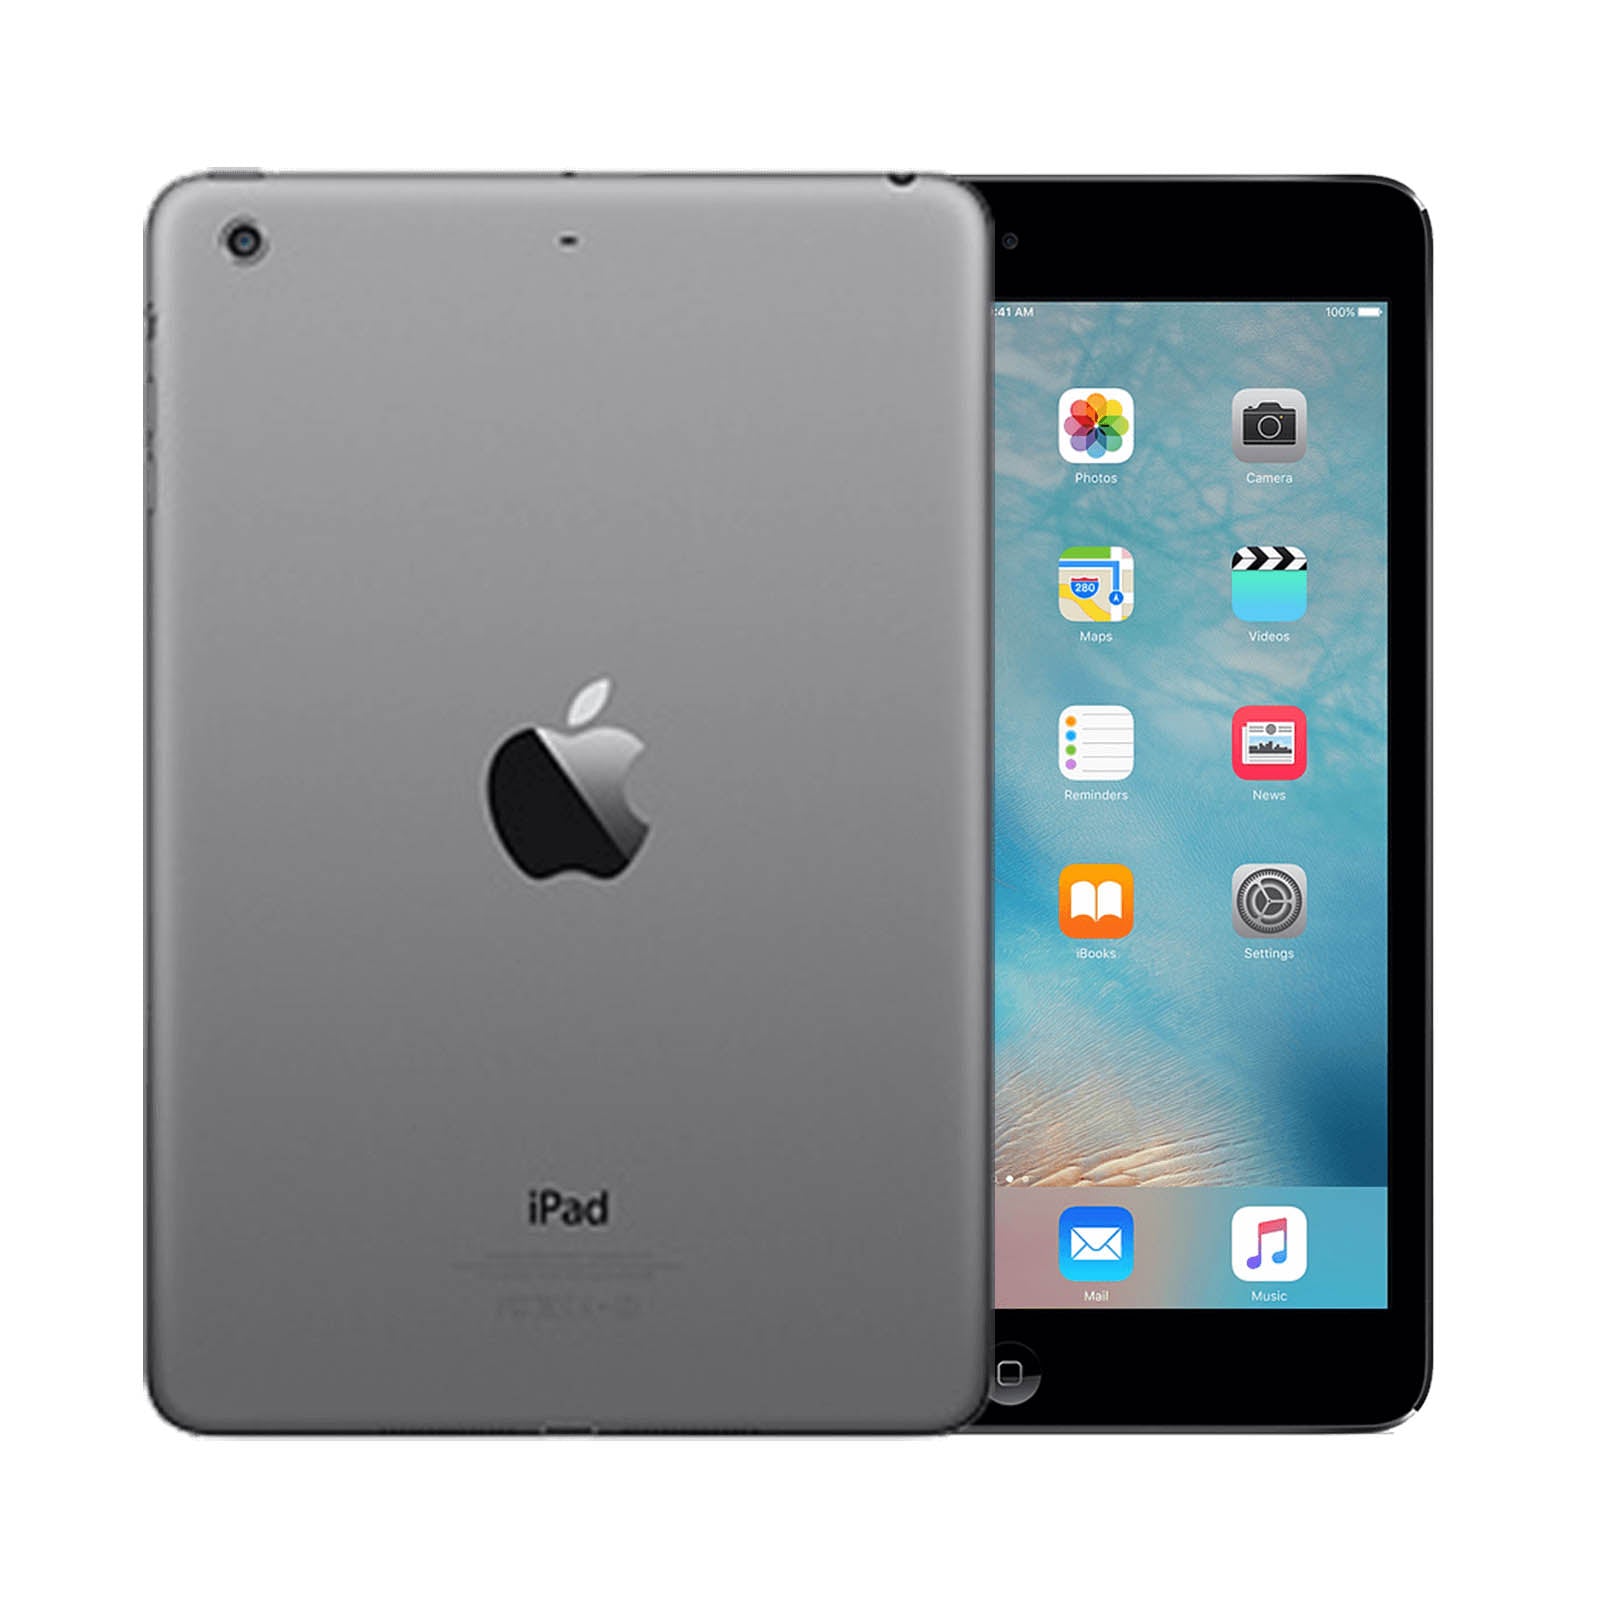 Apple iPad mini 2 16GB Black Very Good - Unlocked